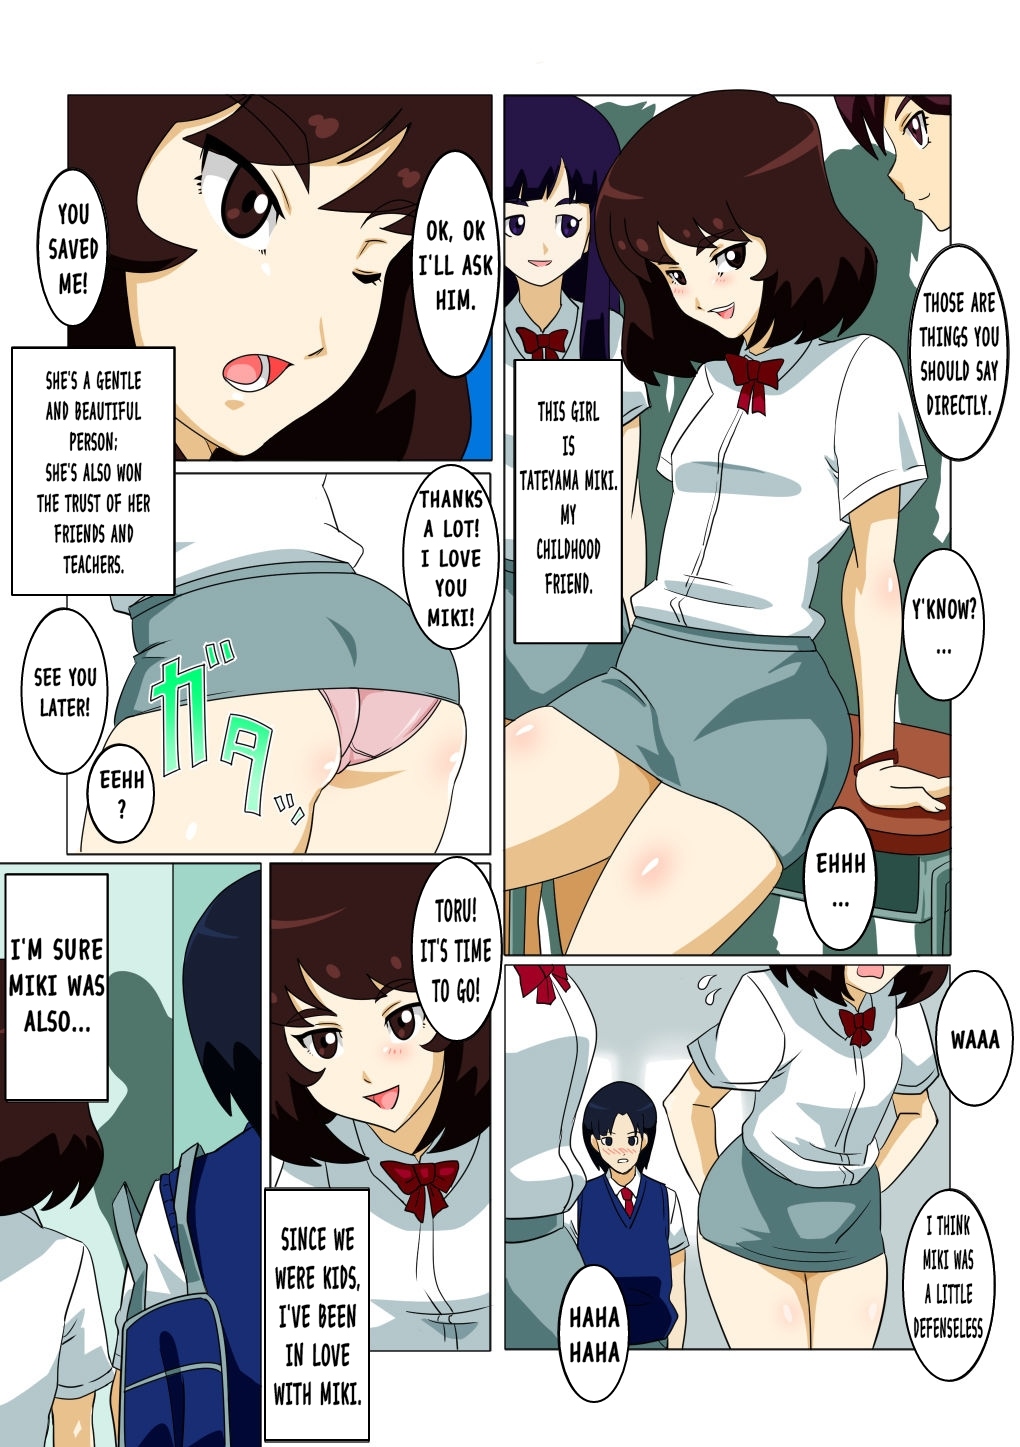 Cartoon Porn Schoolgirl - Naughty Schoolgirl - Straw and Actuator - Porn Cartoon Comics